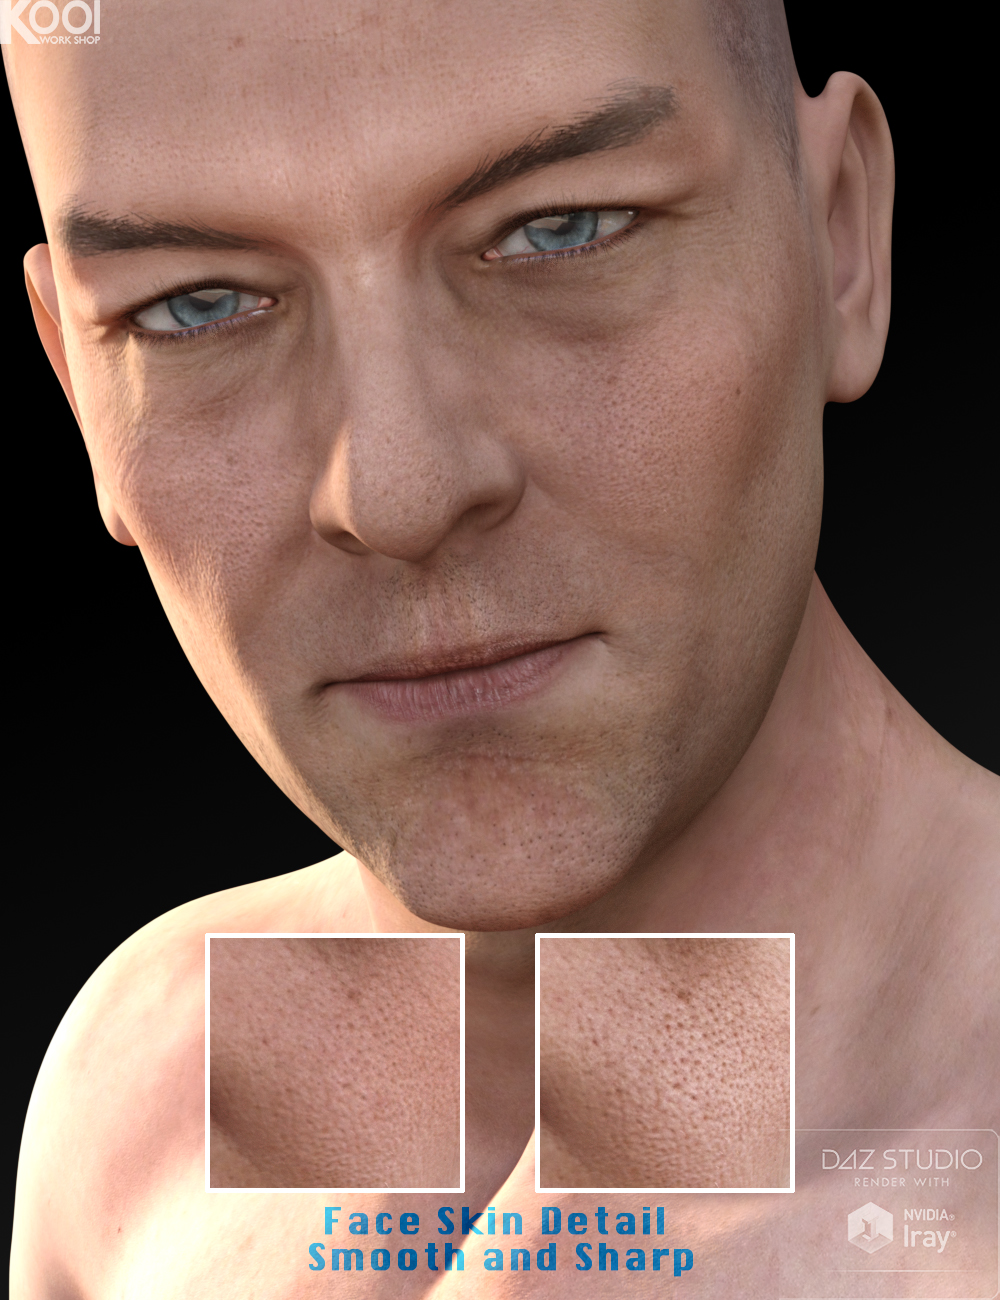 Willis HD for Genesis 3 Male by: Kool, 3D Models by Daz 3D